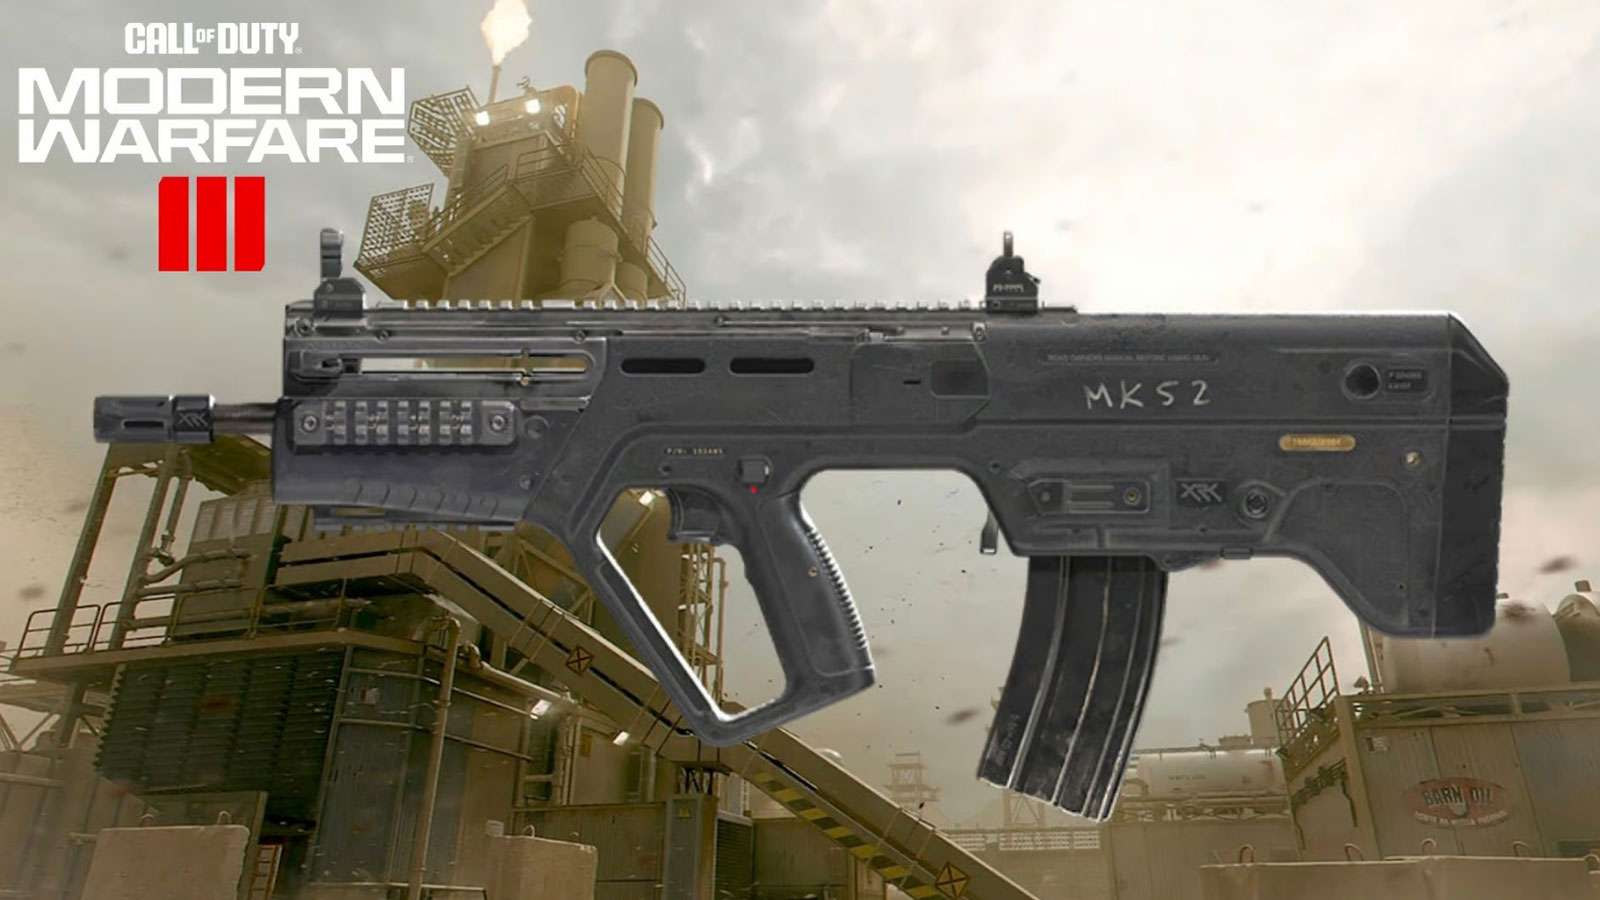 RAM-7 Modern Warfare 3